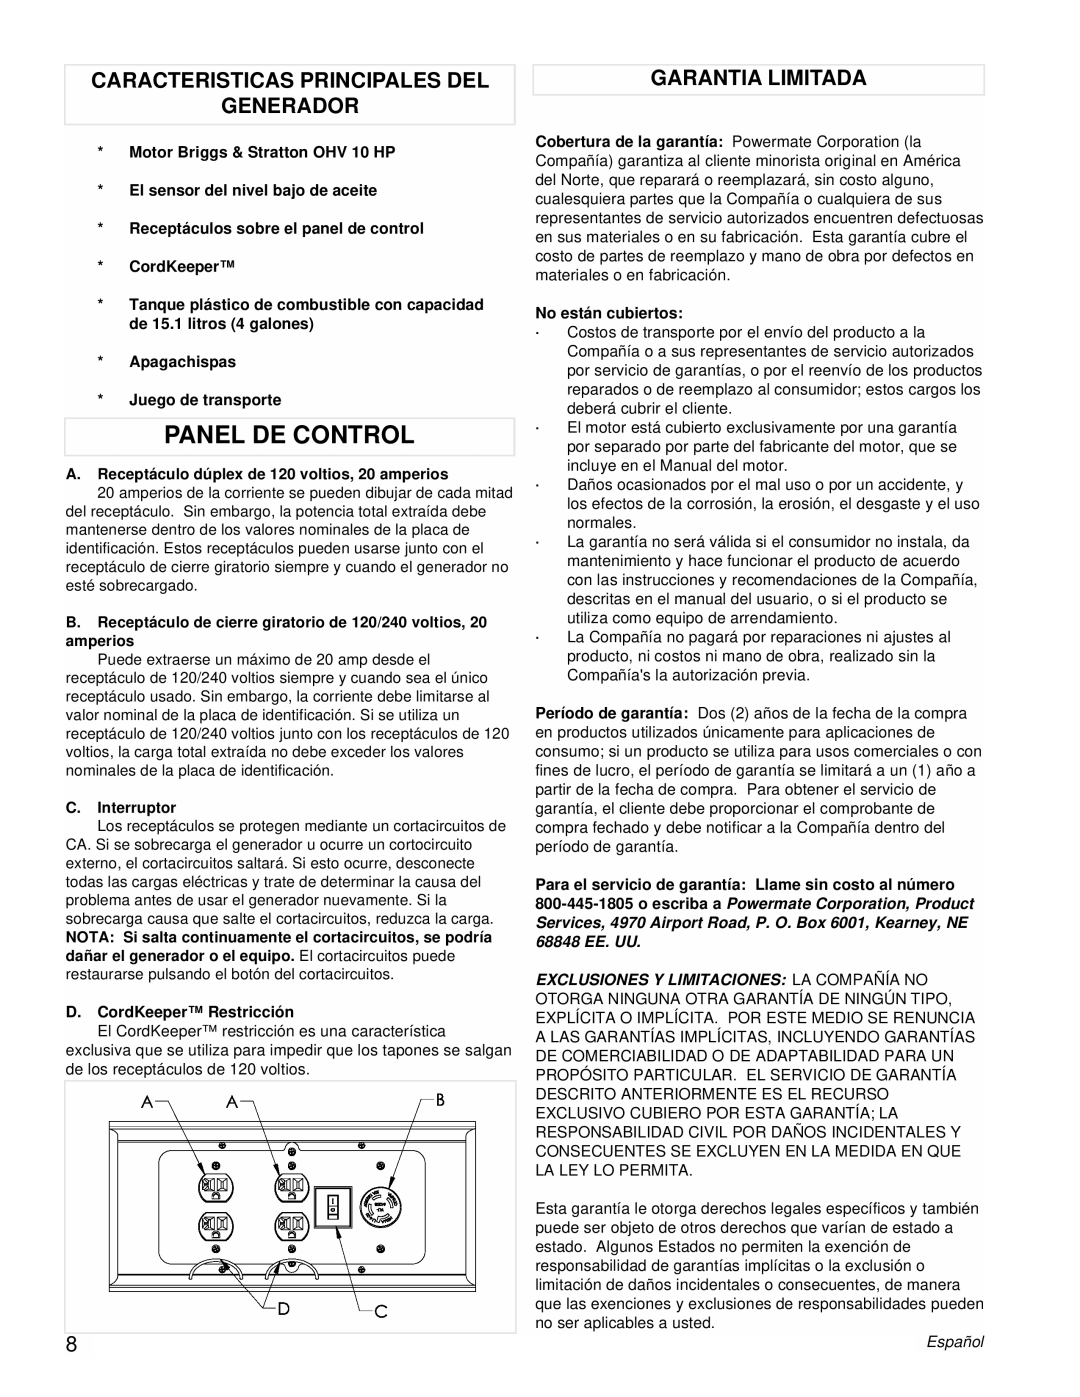 Powermate PMC543250 manual Panel De Control, Caracteristicas Principales Del, Garantia Limitada, Generador 